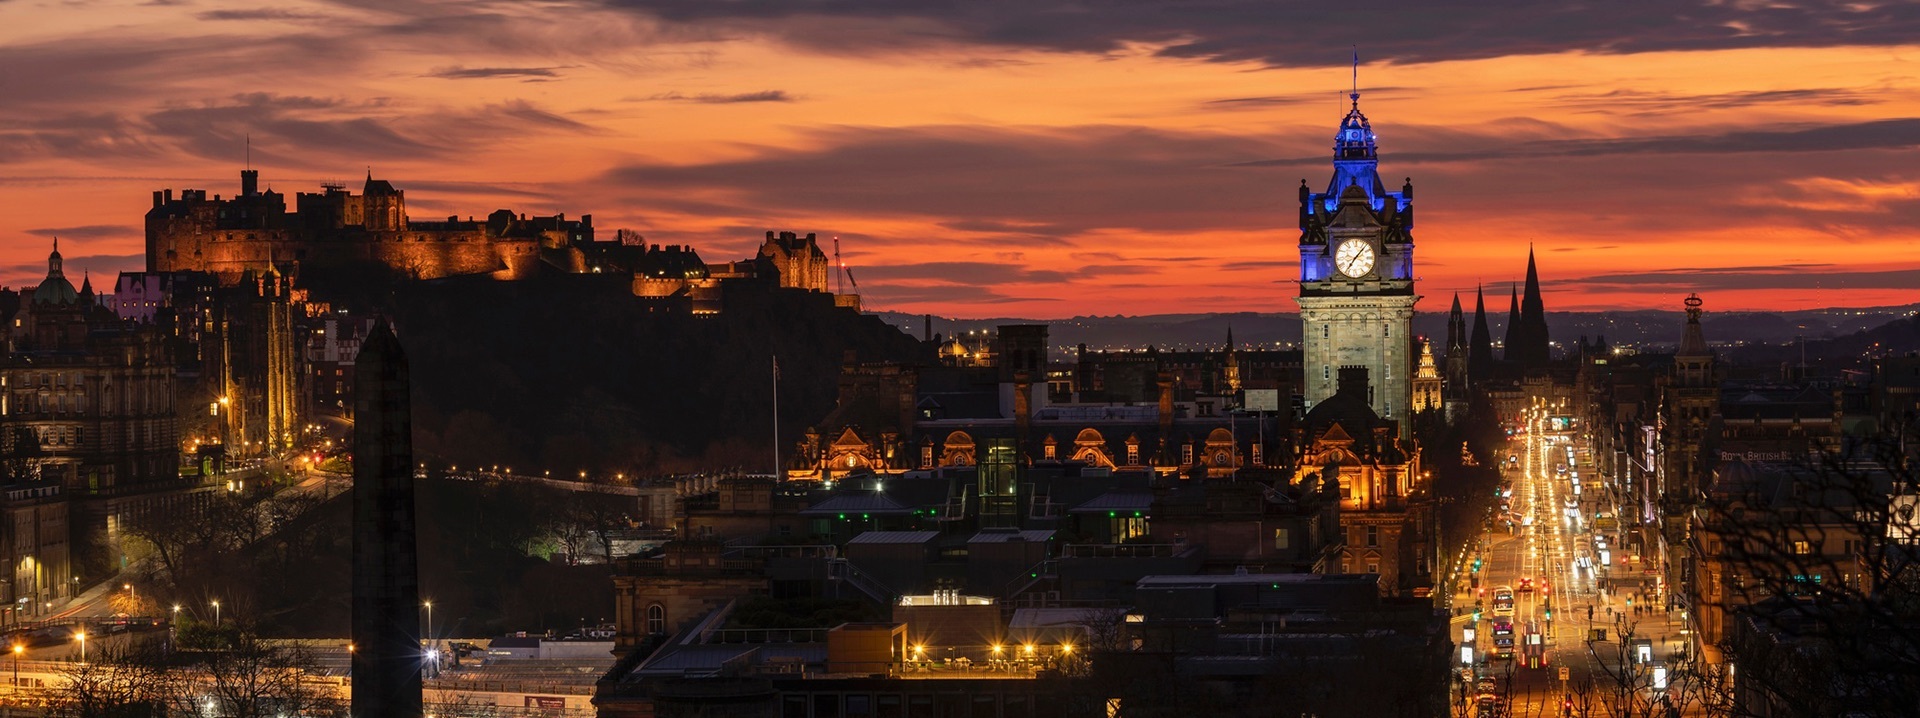 Panorama von Edinburgh bei Nacht mit der Princes Street, dem Balmoral Hotel, Edinburgh Castle und weiteren Gebäuden.